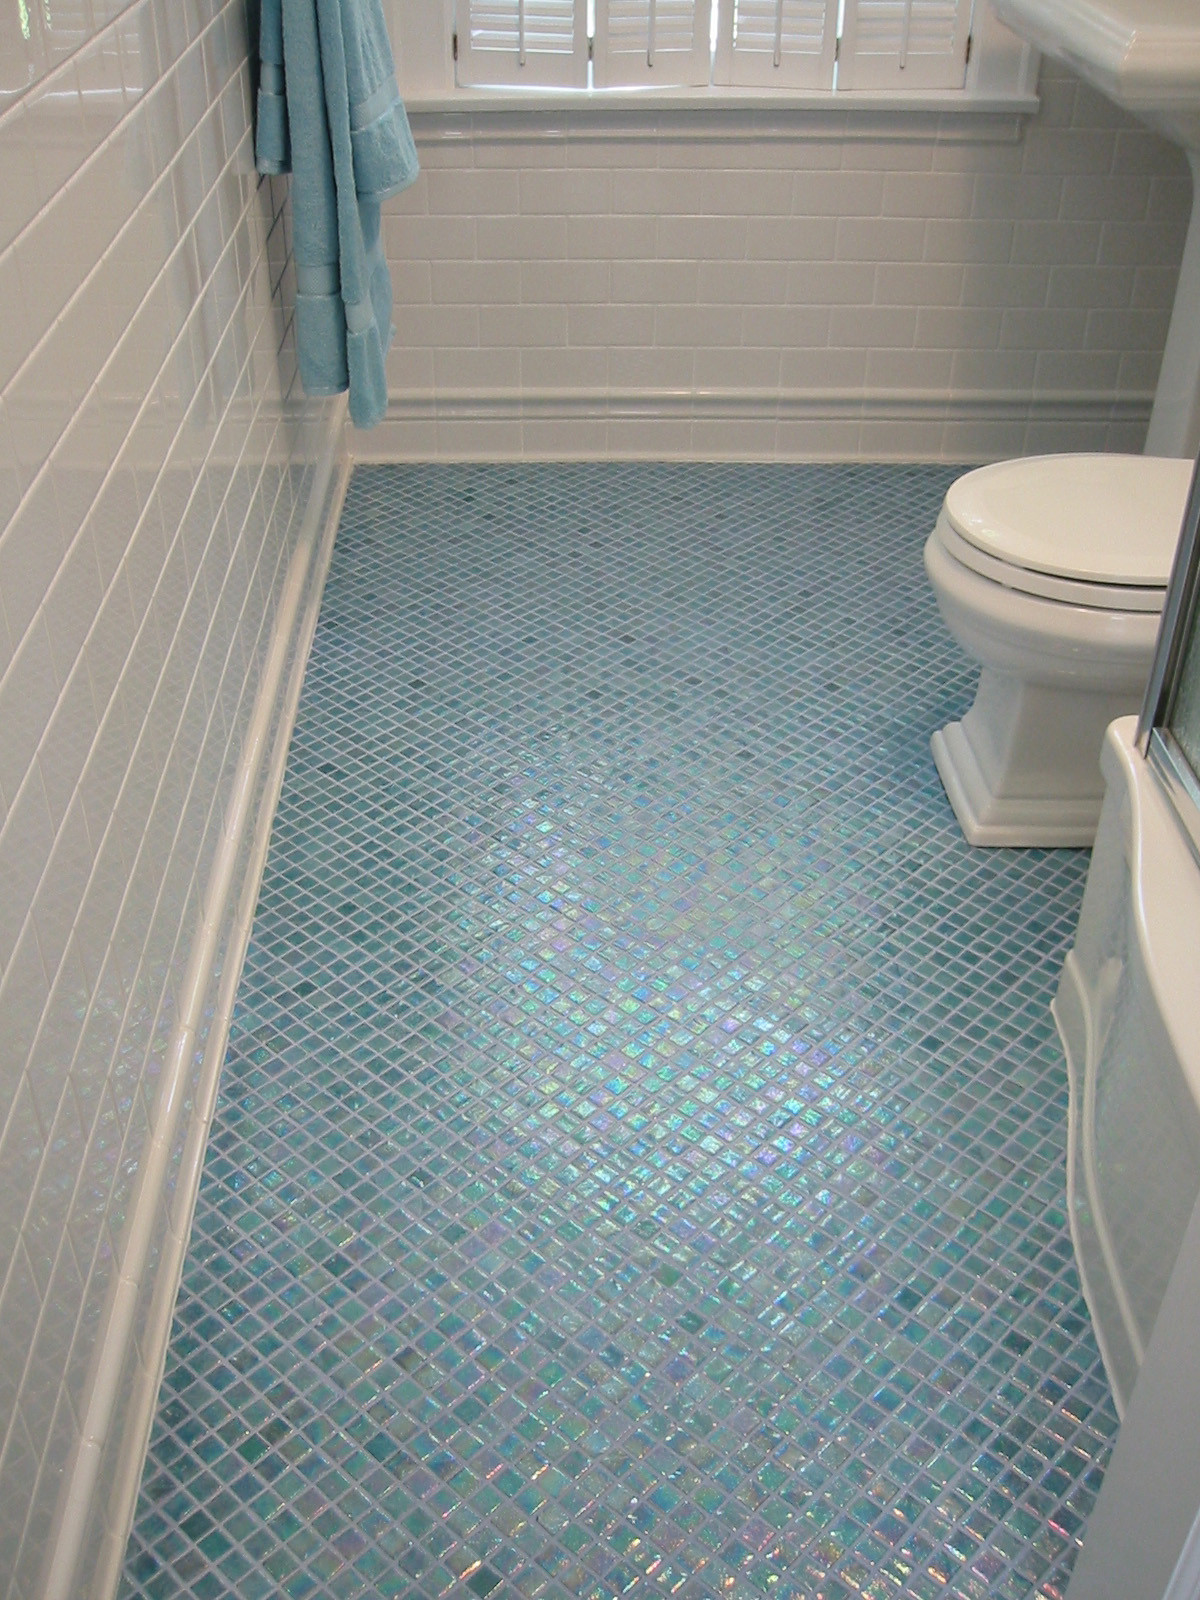 Glass Tile Bathroom Floor
 21 ceramic tile ideas for small bathrooms